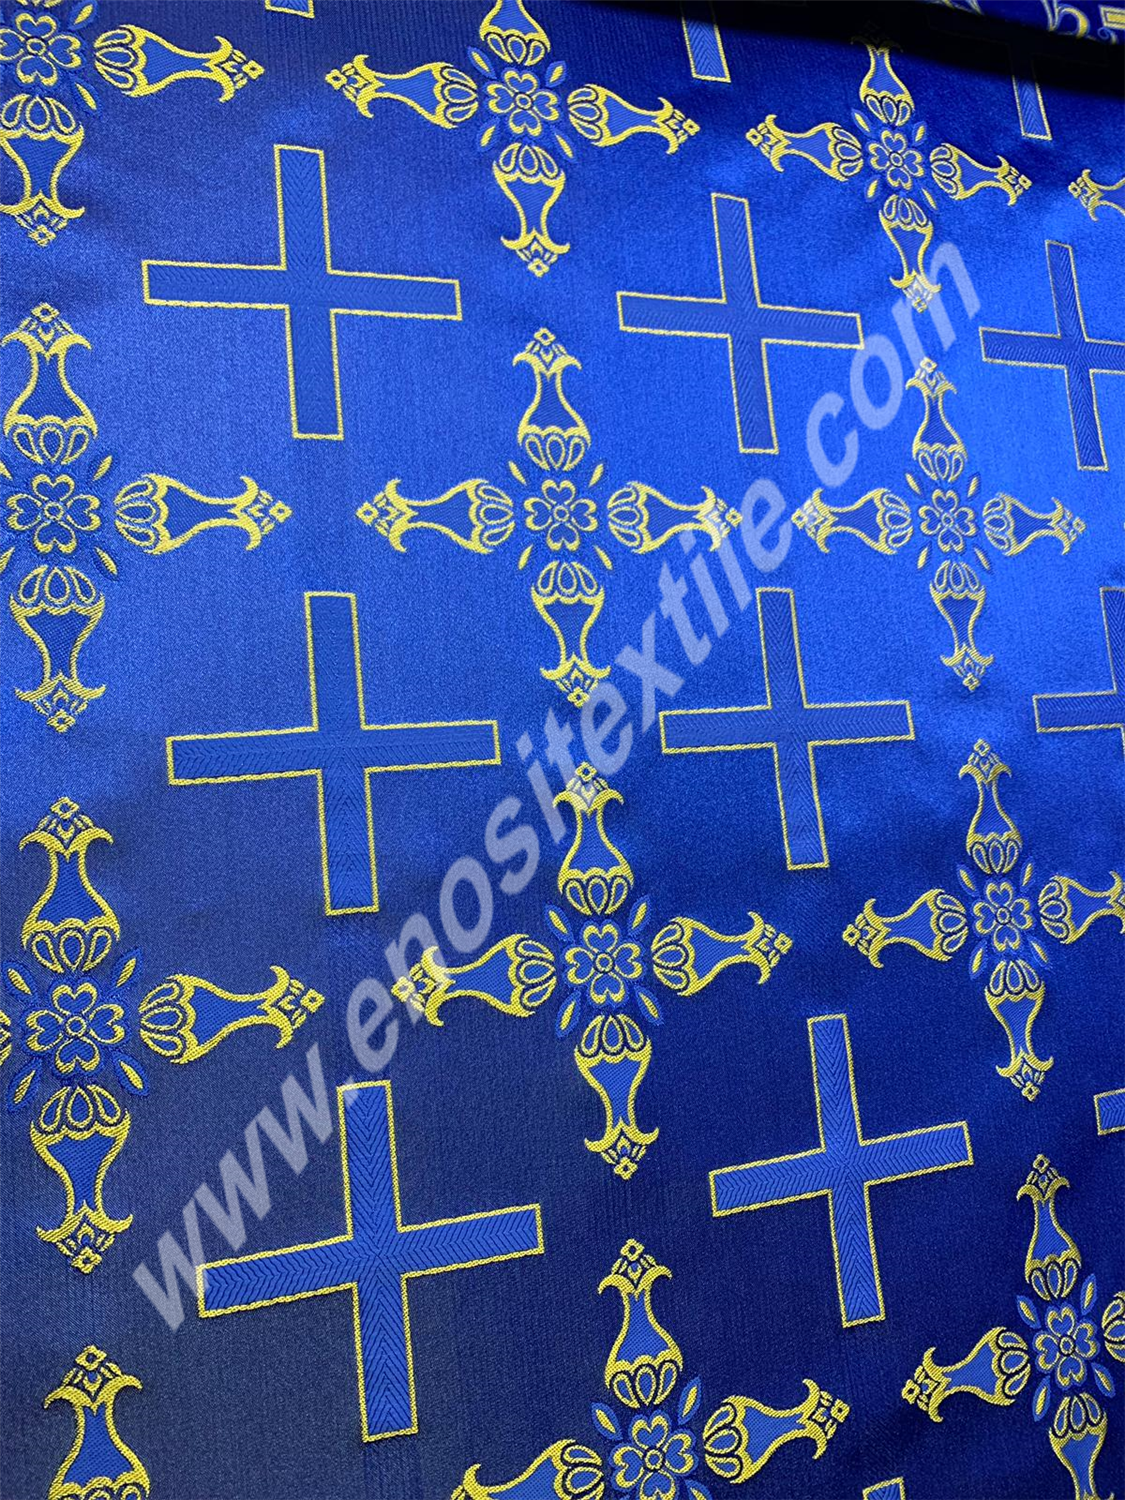 KL-067 Dark Blue-Gold Brocade Fabrics